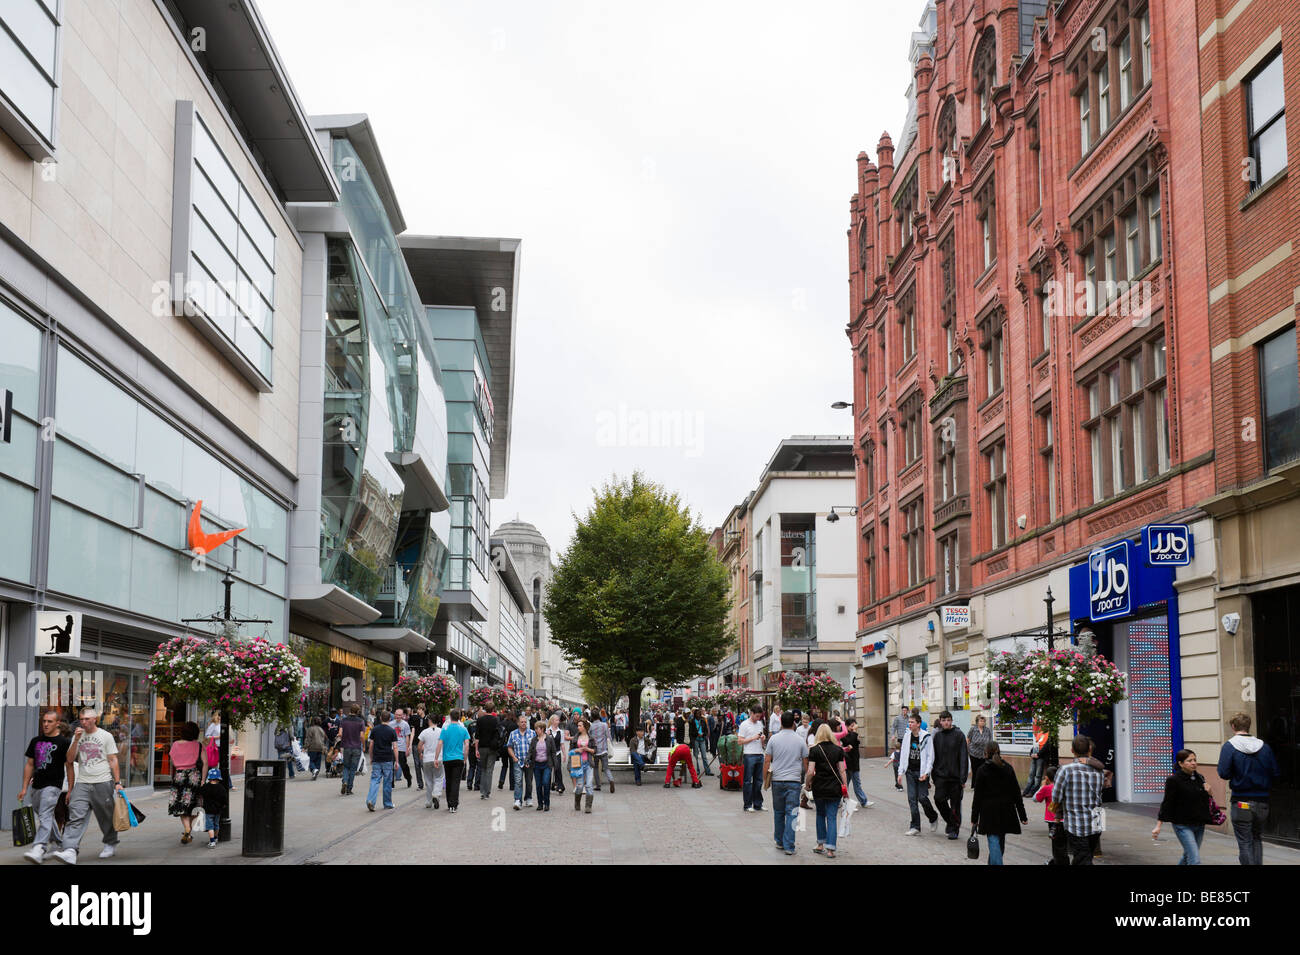 Les principaux magasins et magasins sur Market Street près de l'Arndale Centre, Manchester, Angleterre Banque D'Images